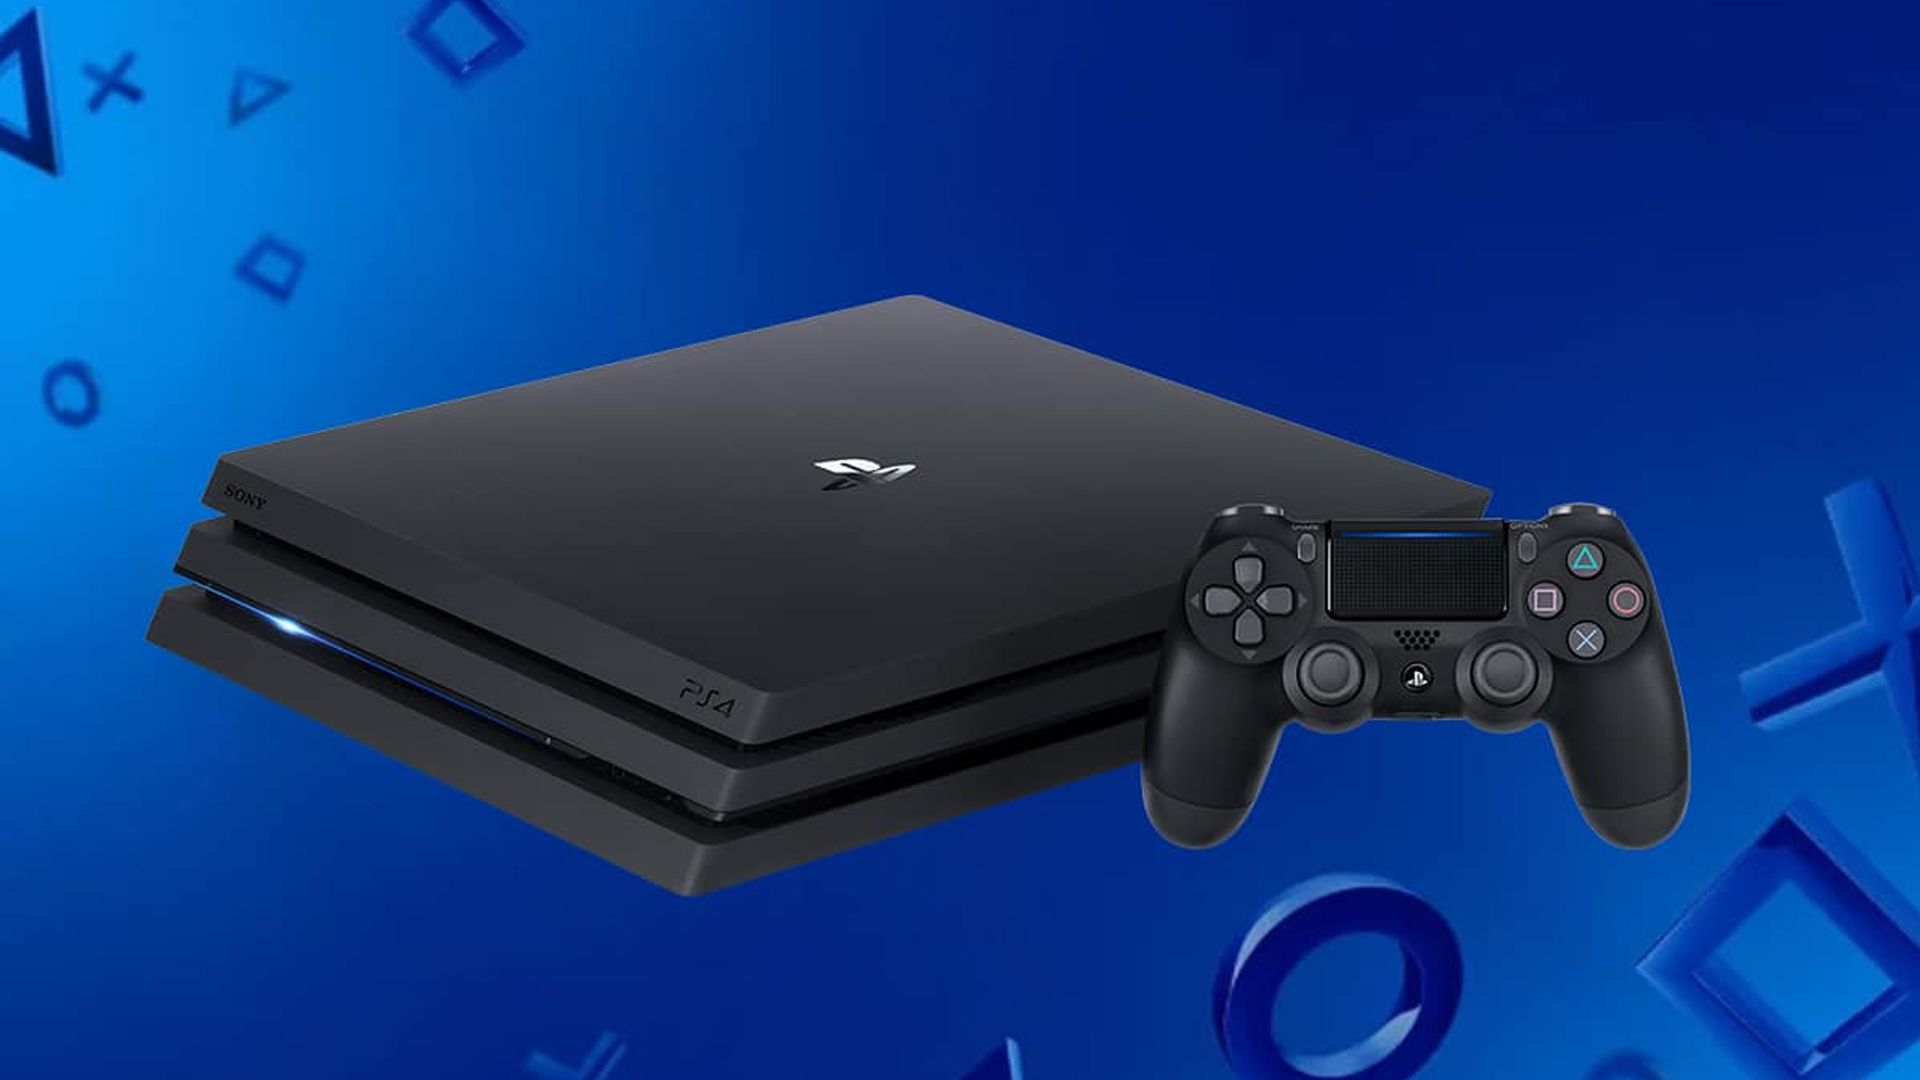 PS5: le disque dur 4 To spécial Playstation déjà vendu en